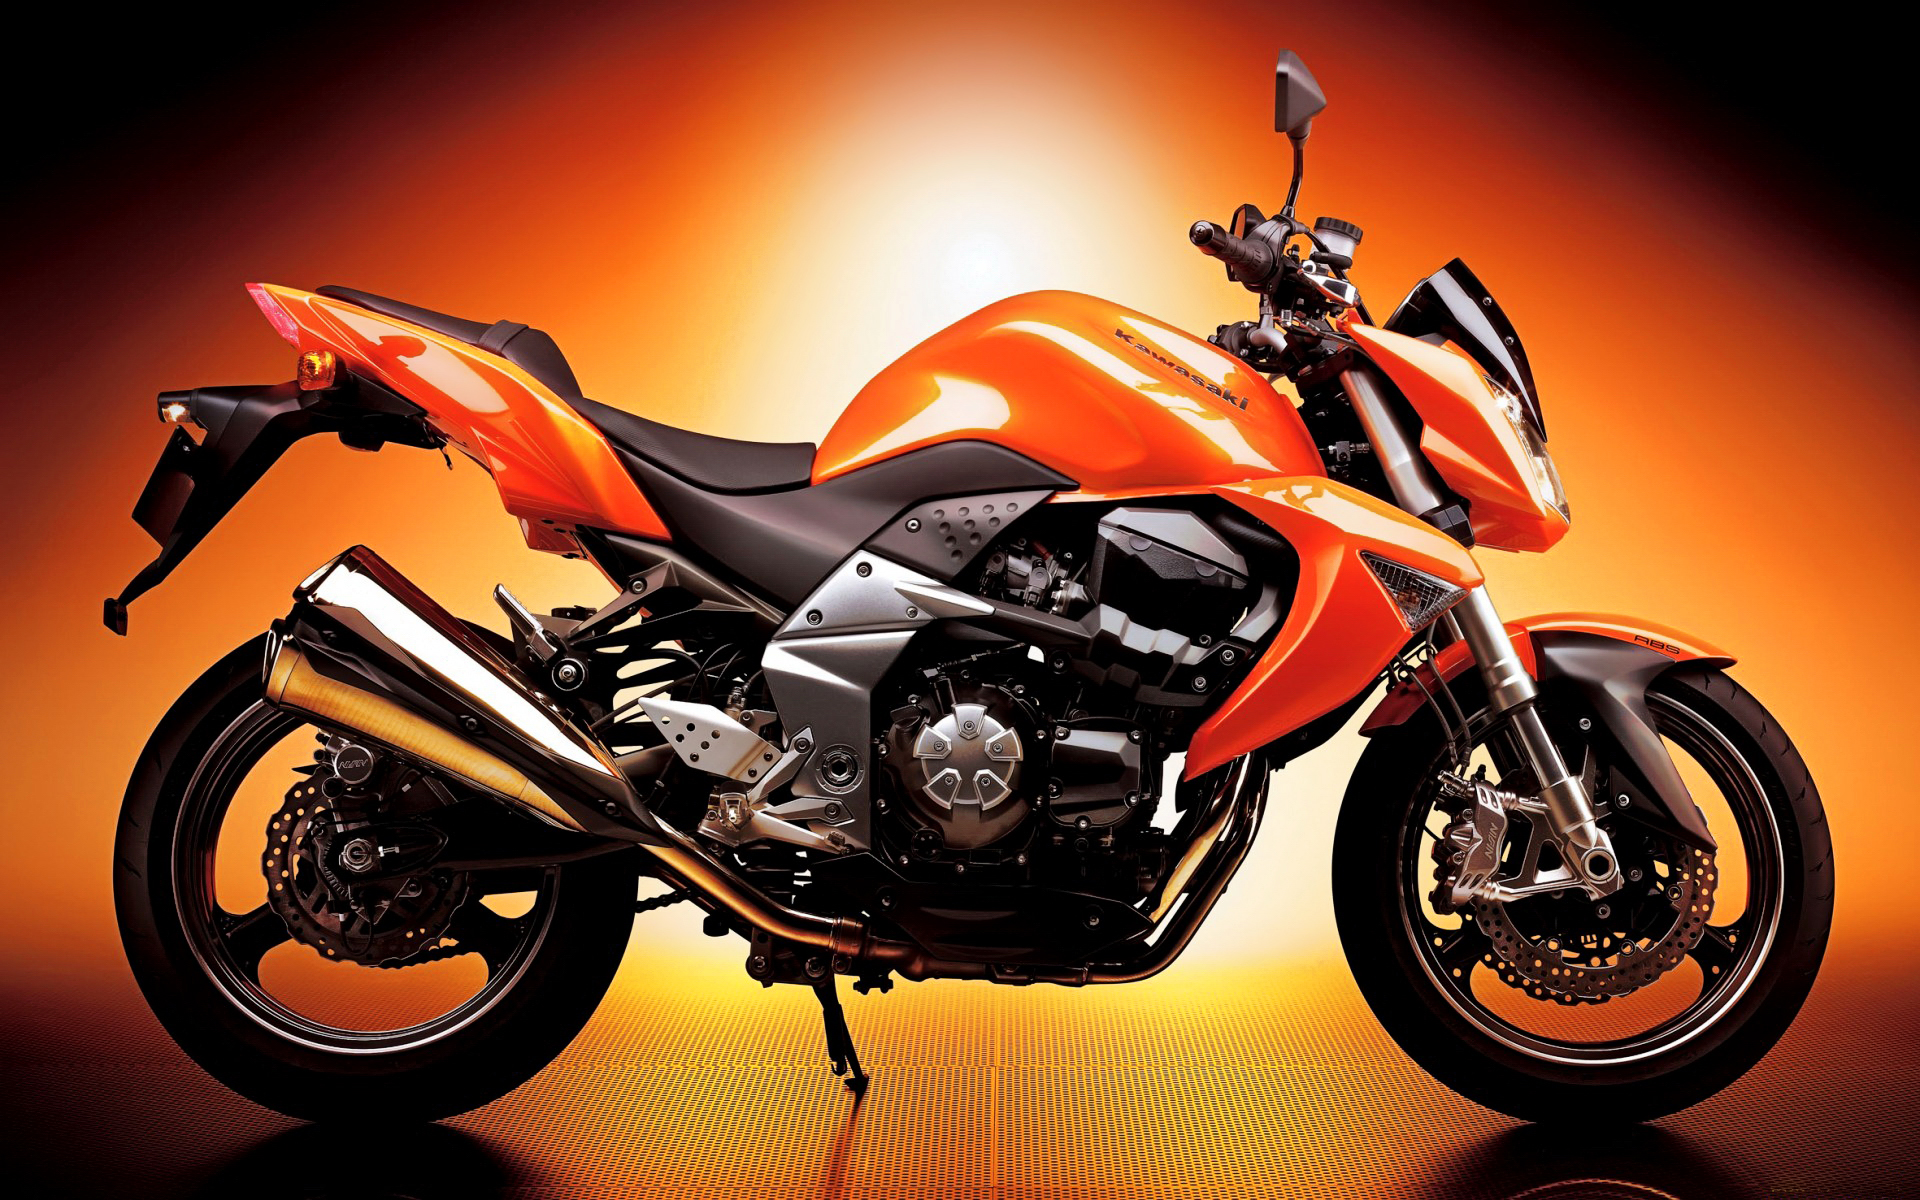 motorcycle wallpaper,land vehicle,vehicle,motorcycle,orange,car